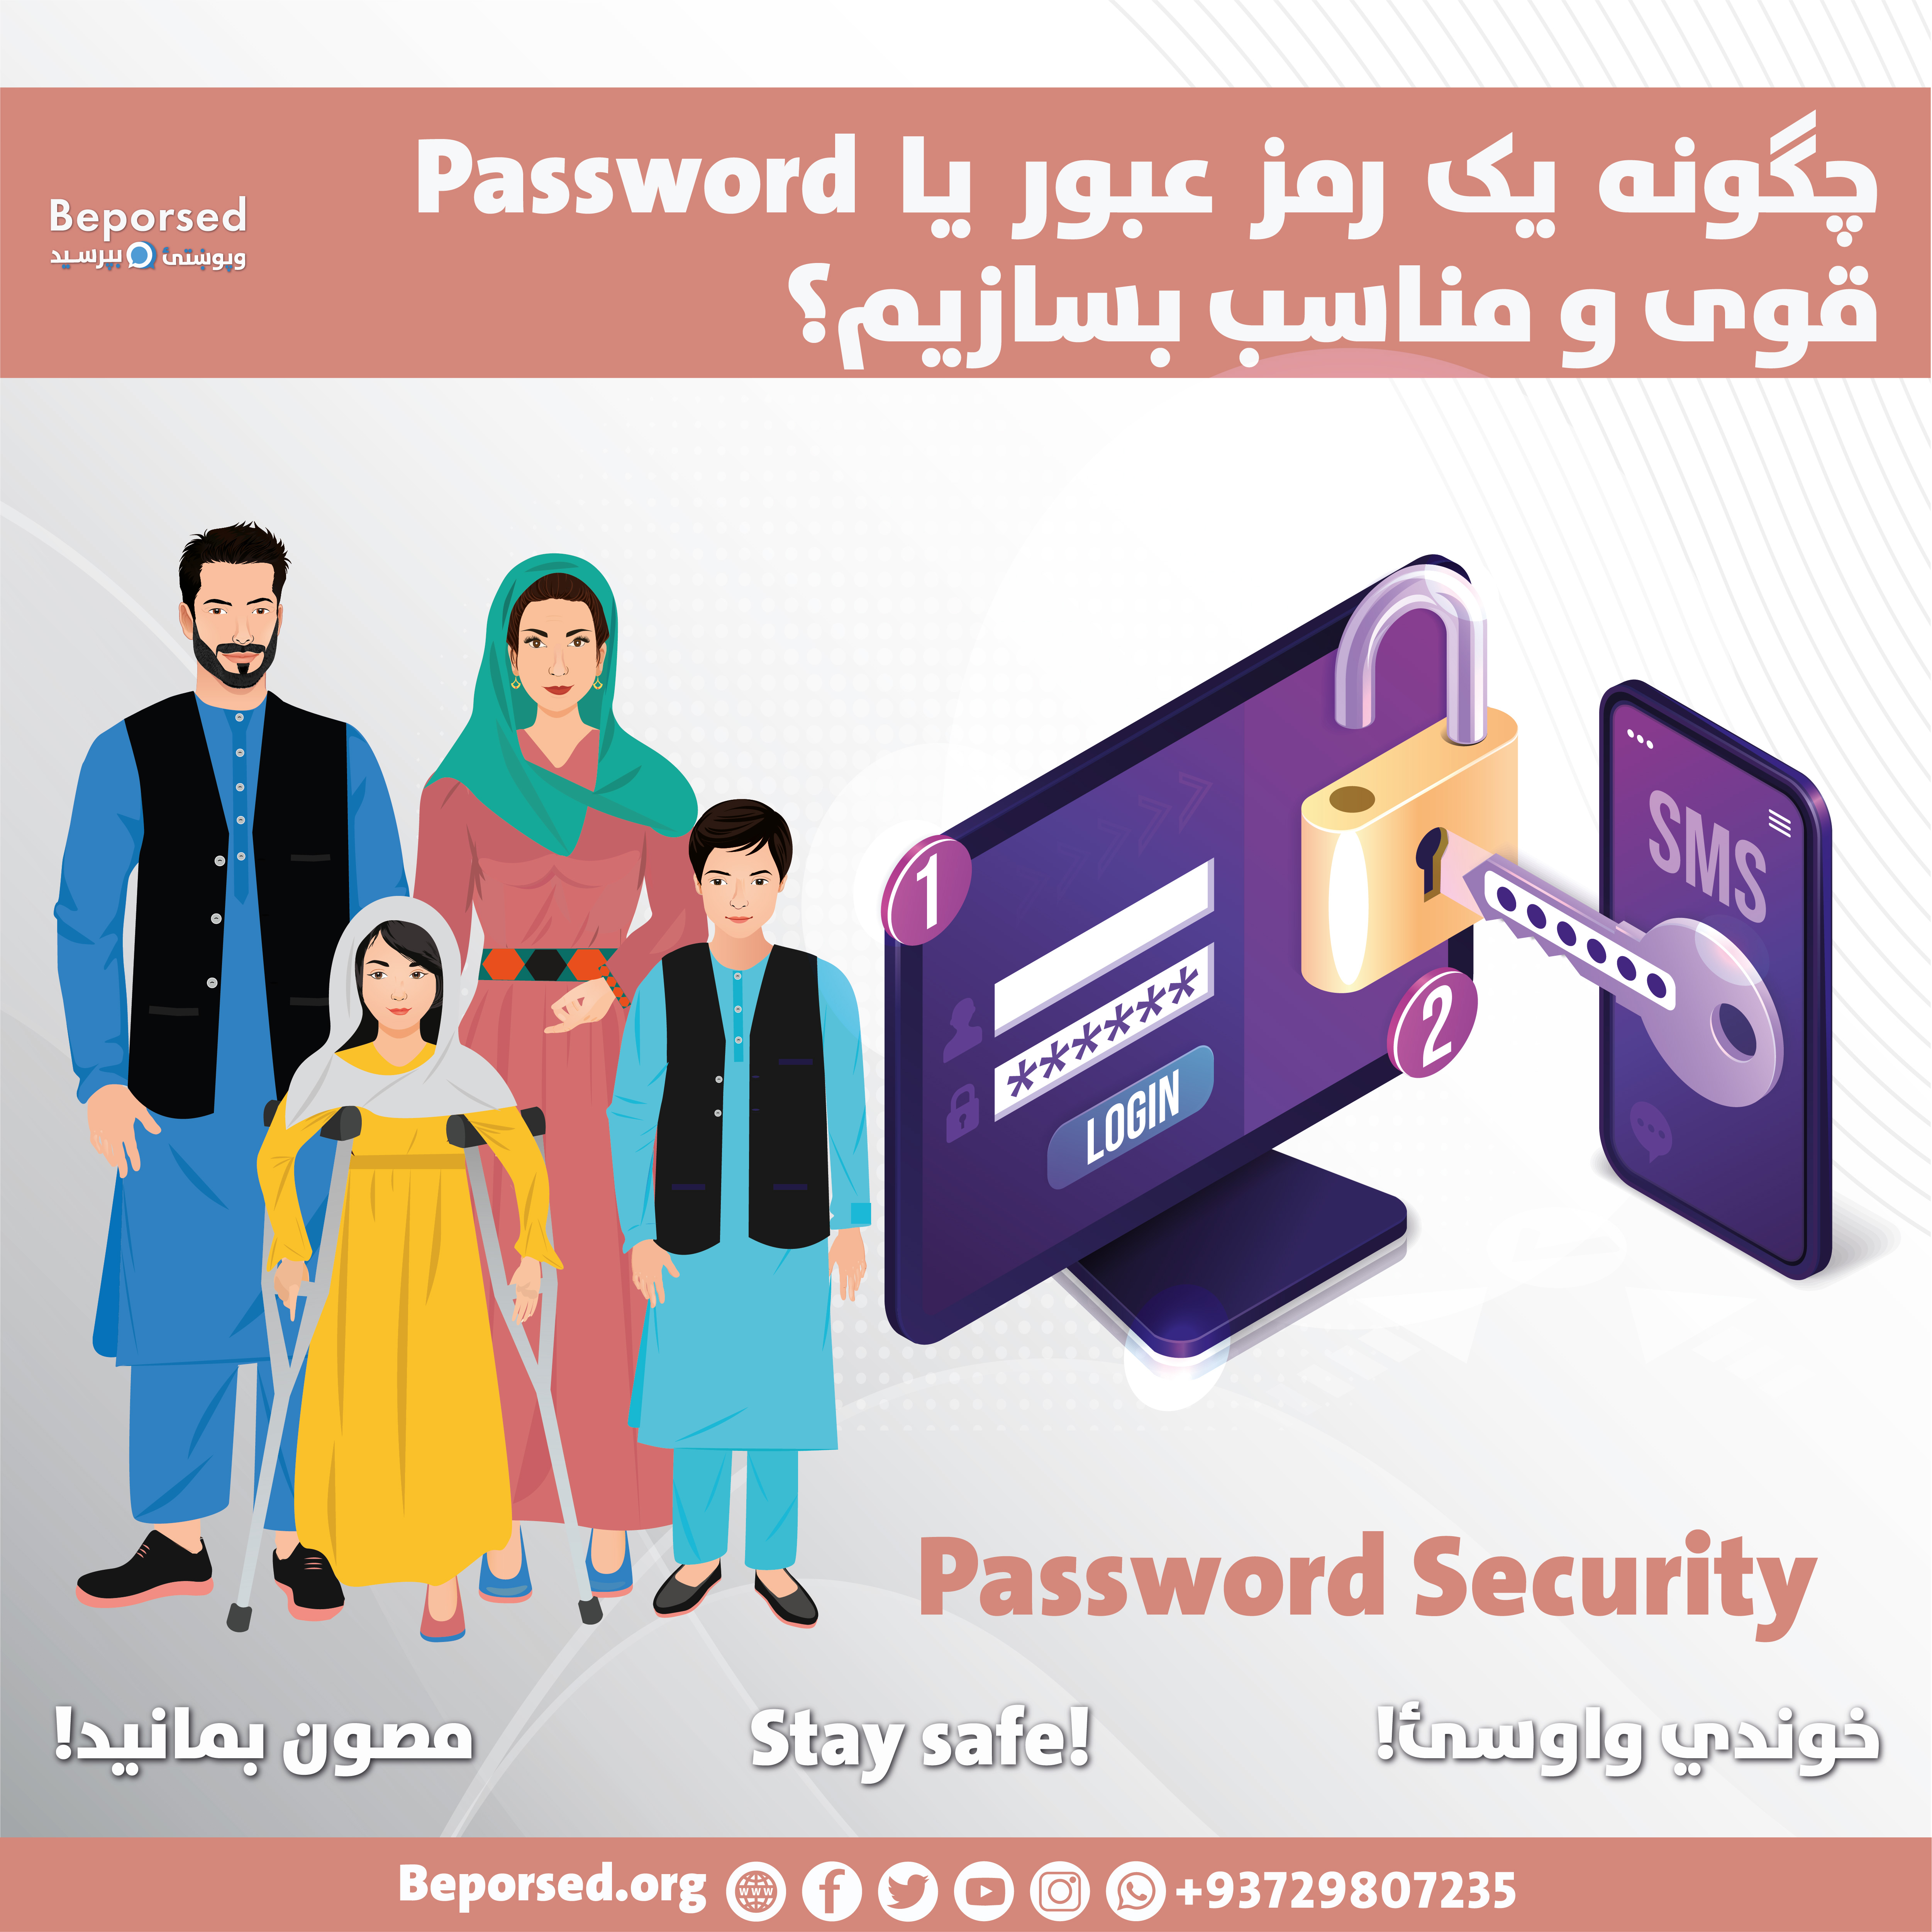 چگونه یک رمز عبور یا Password قوی و مناسب بسازیم؟-01.jpg